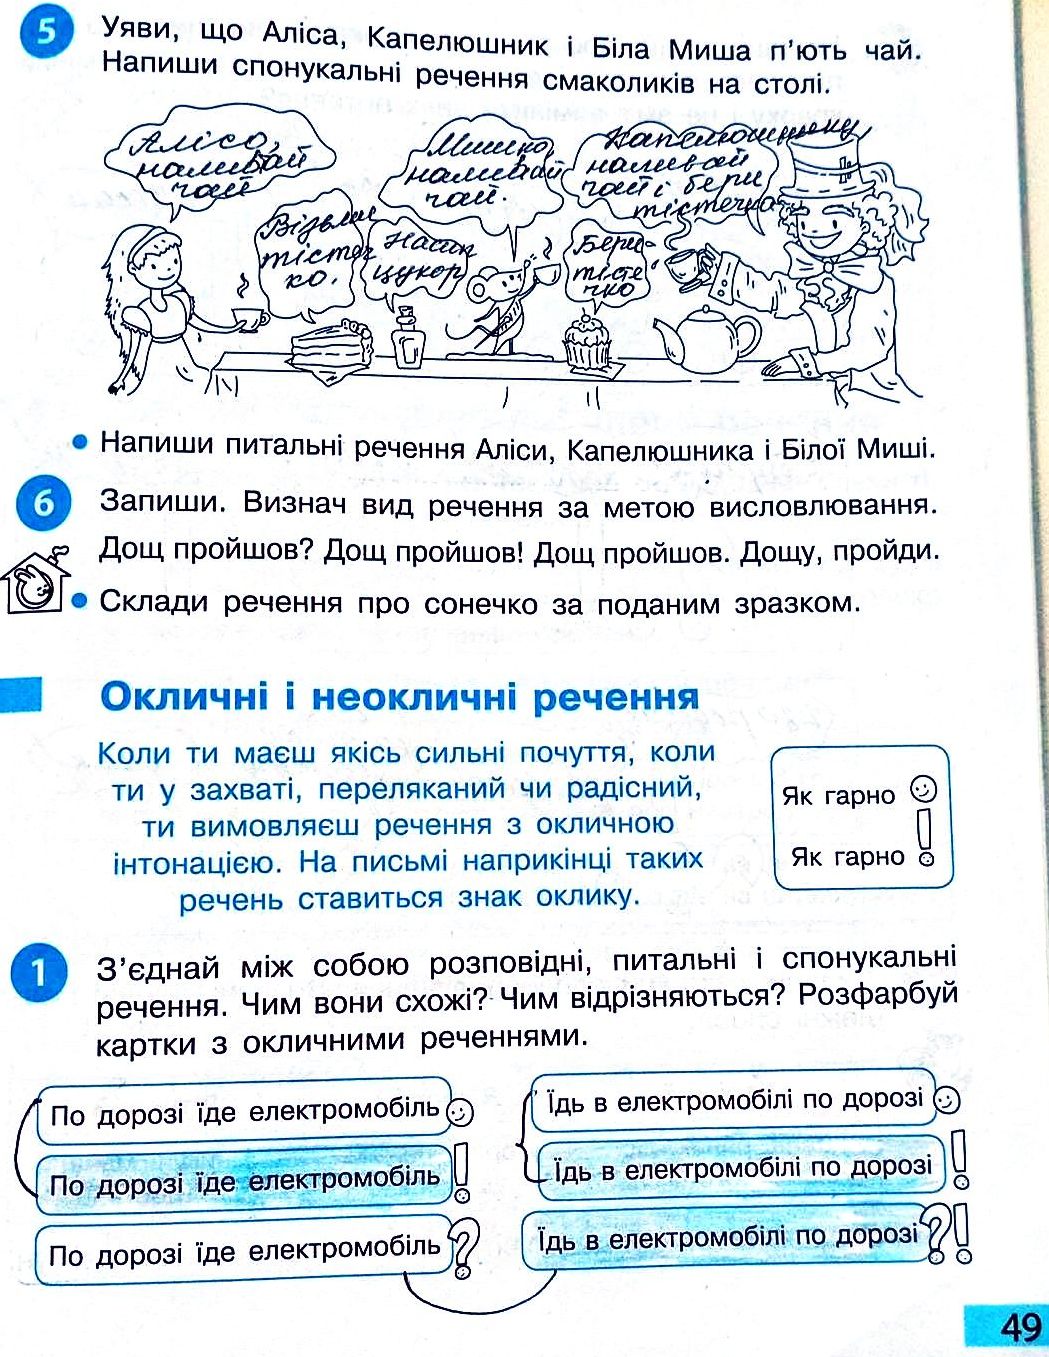 Сторінка 49 частина 2 гдз 3 клас робочий зошит українська мова Большакова